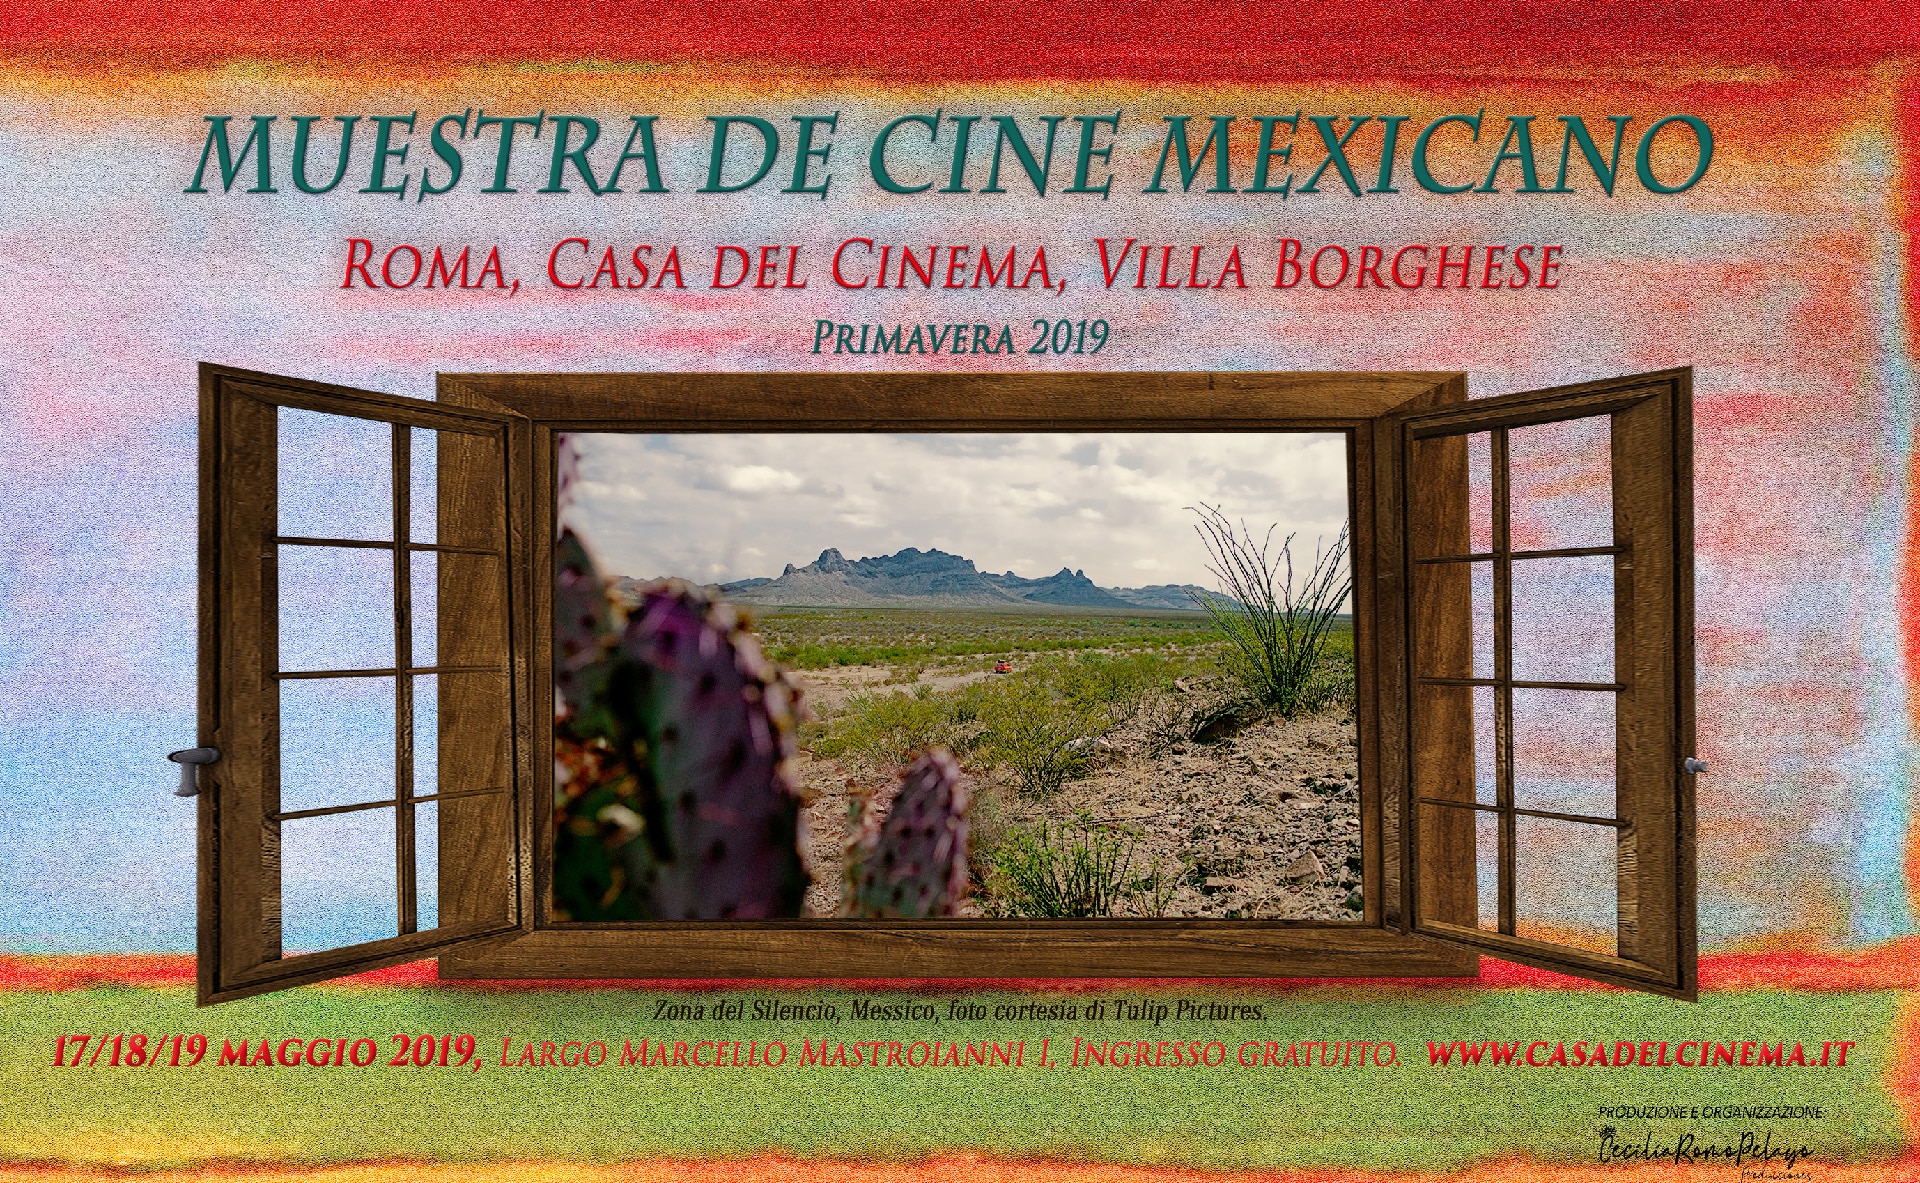 Muestra de Cine Mexicano 2019: arriva a Roma la prima edizione